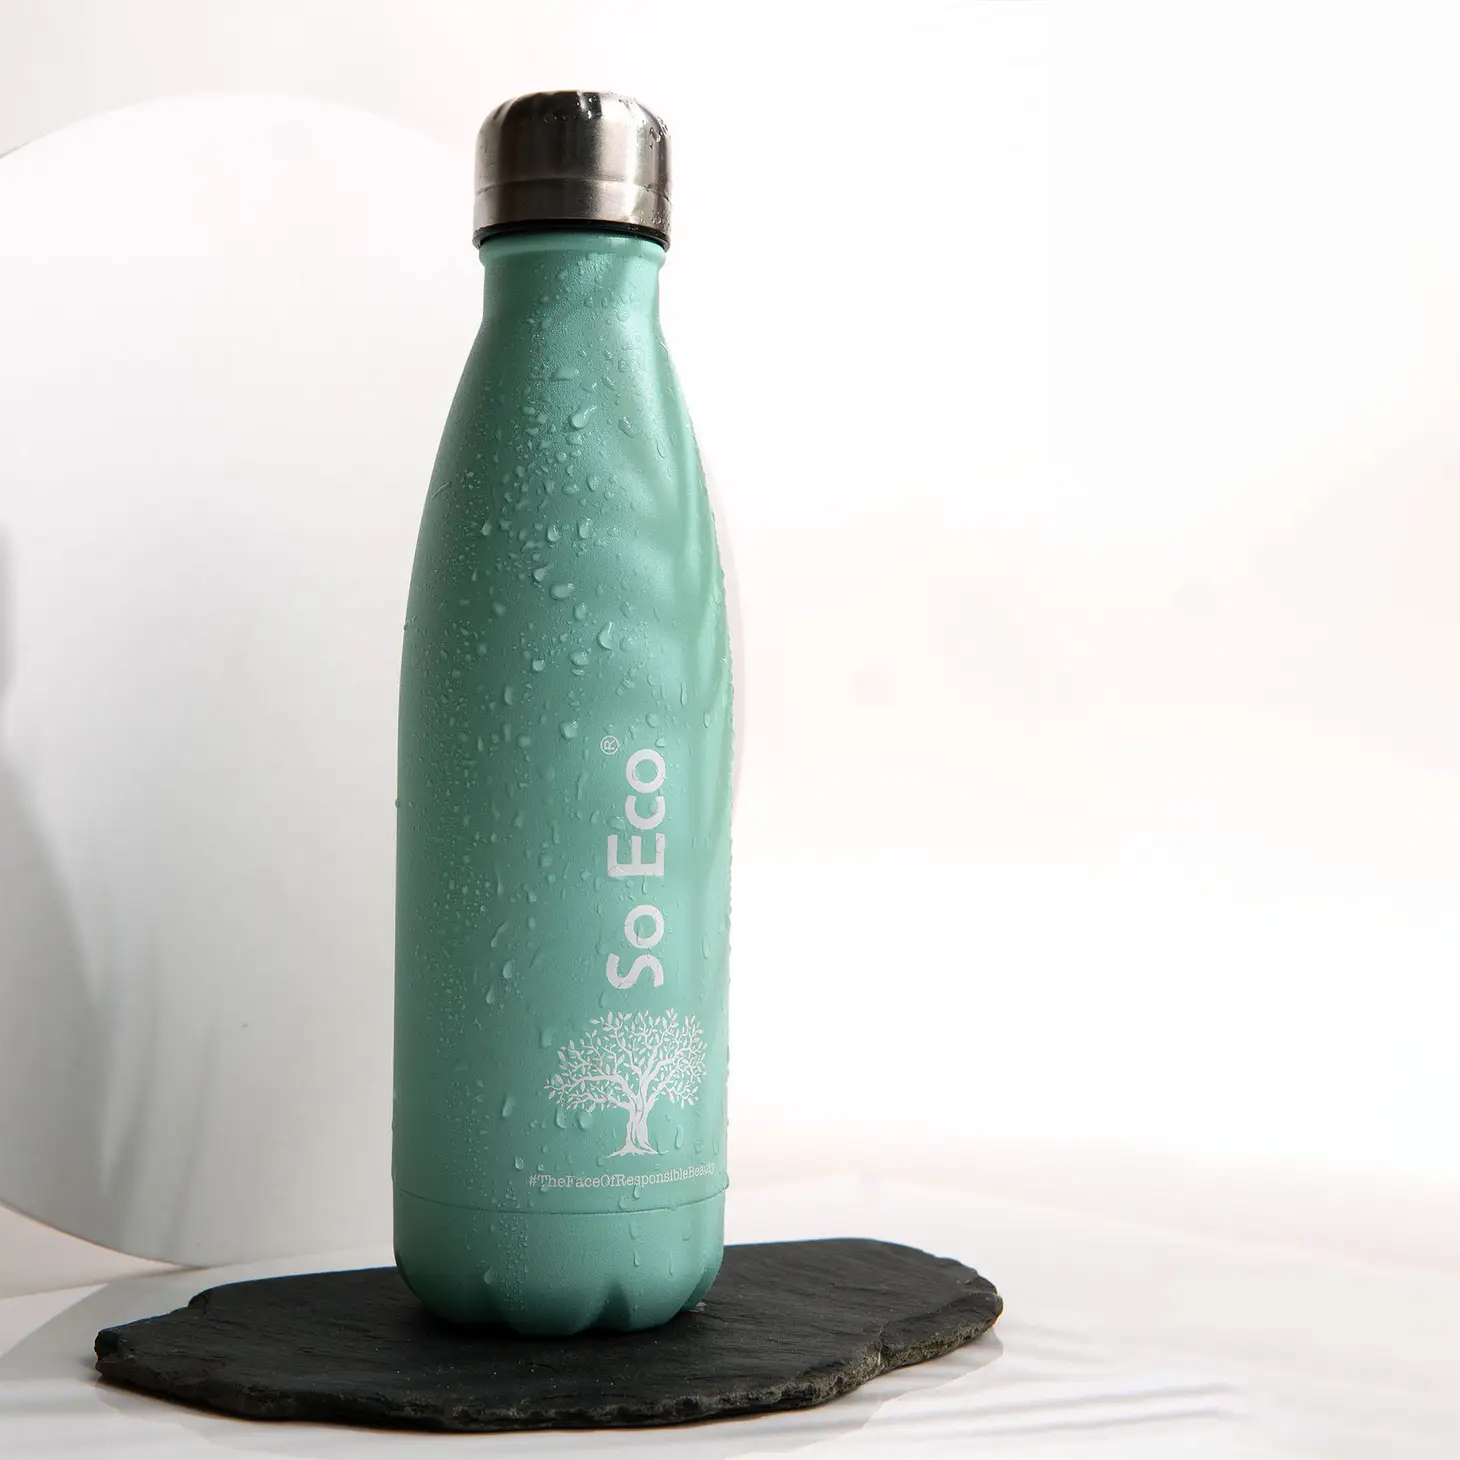 An eco friendly Water bottle